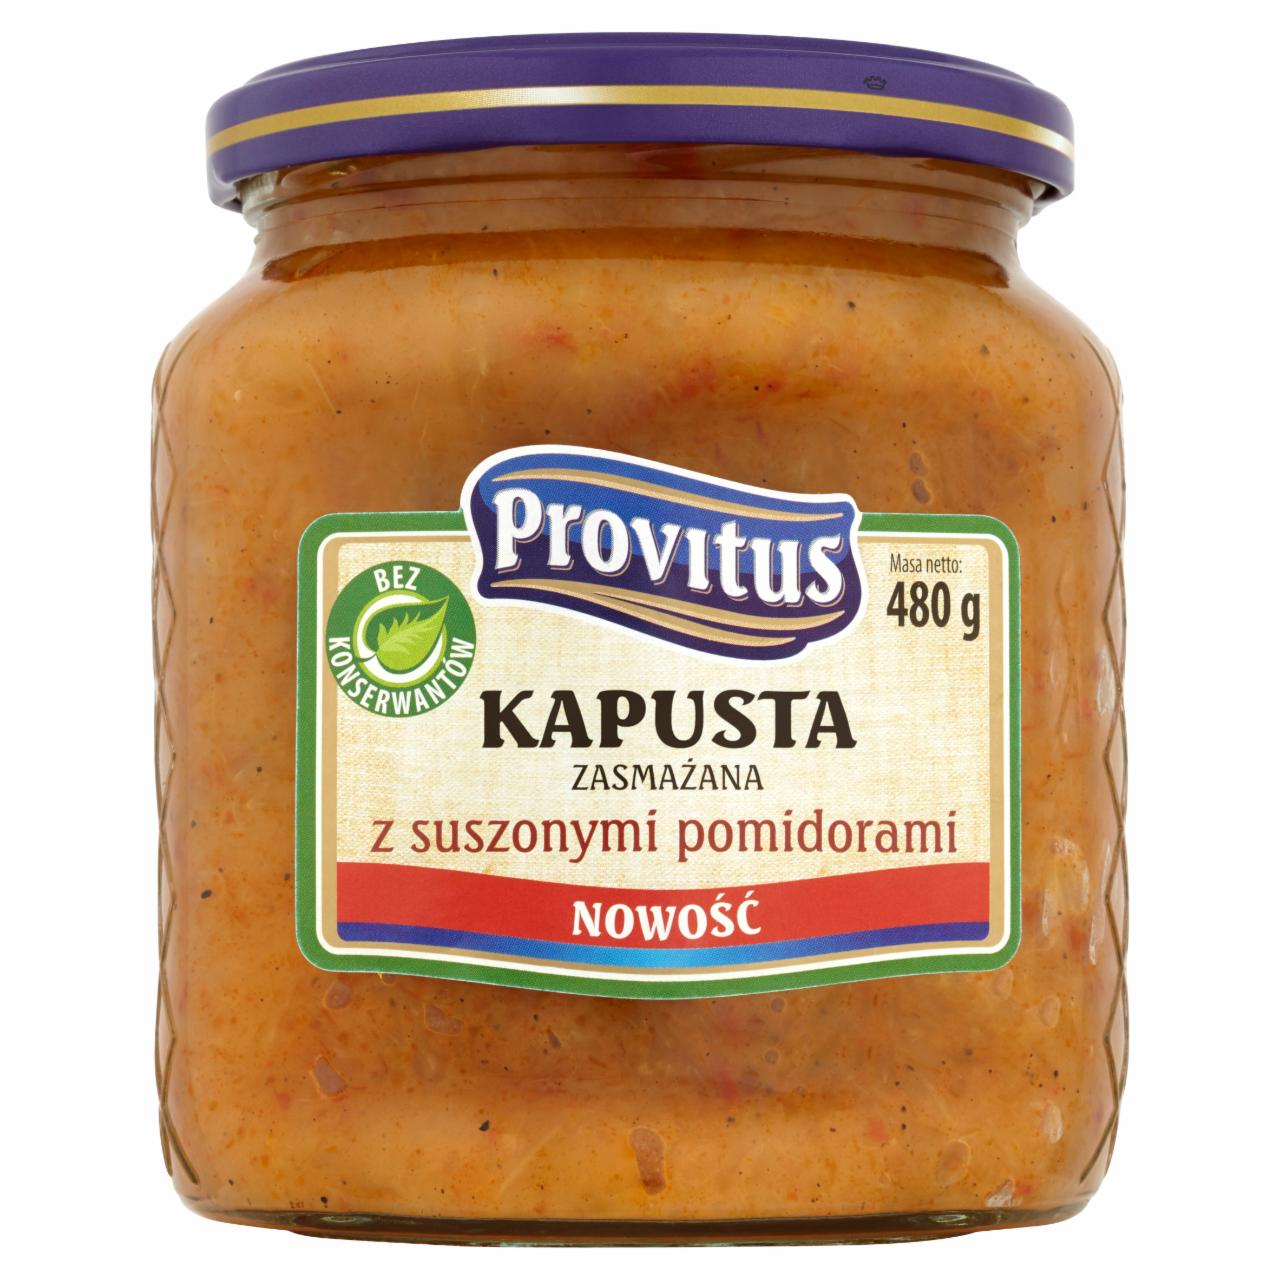 Zdjęcia - Provitus Kapusta zasmażana z suszonymi pomidorami 480 g